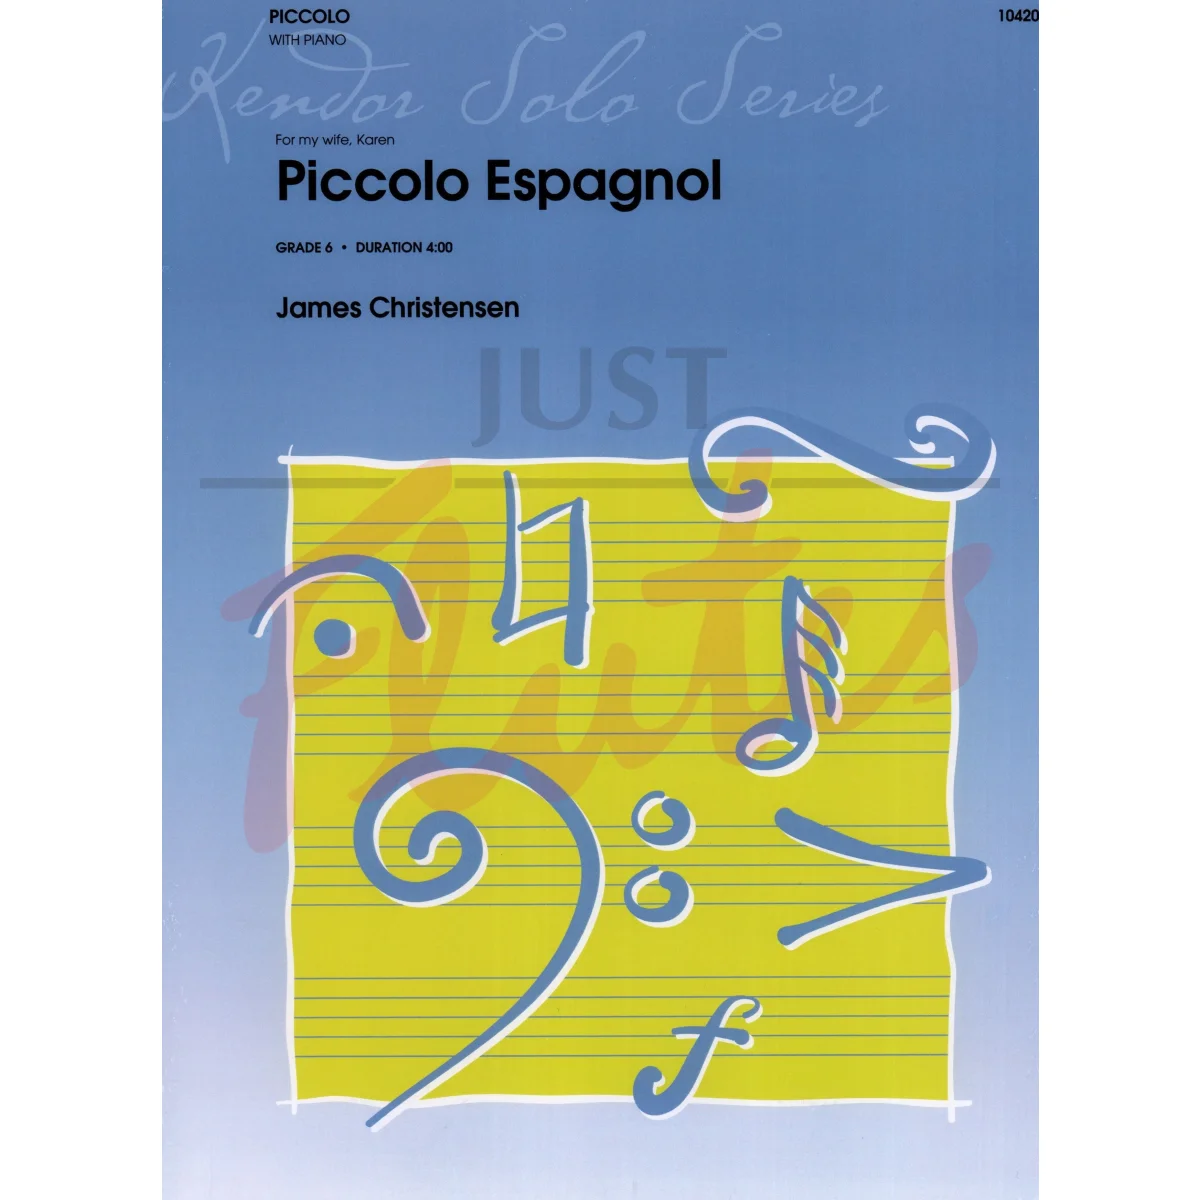 Piccolo Espagnol for Piccolo and Piano